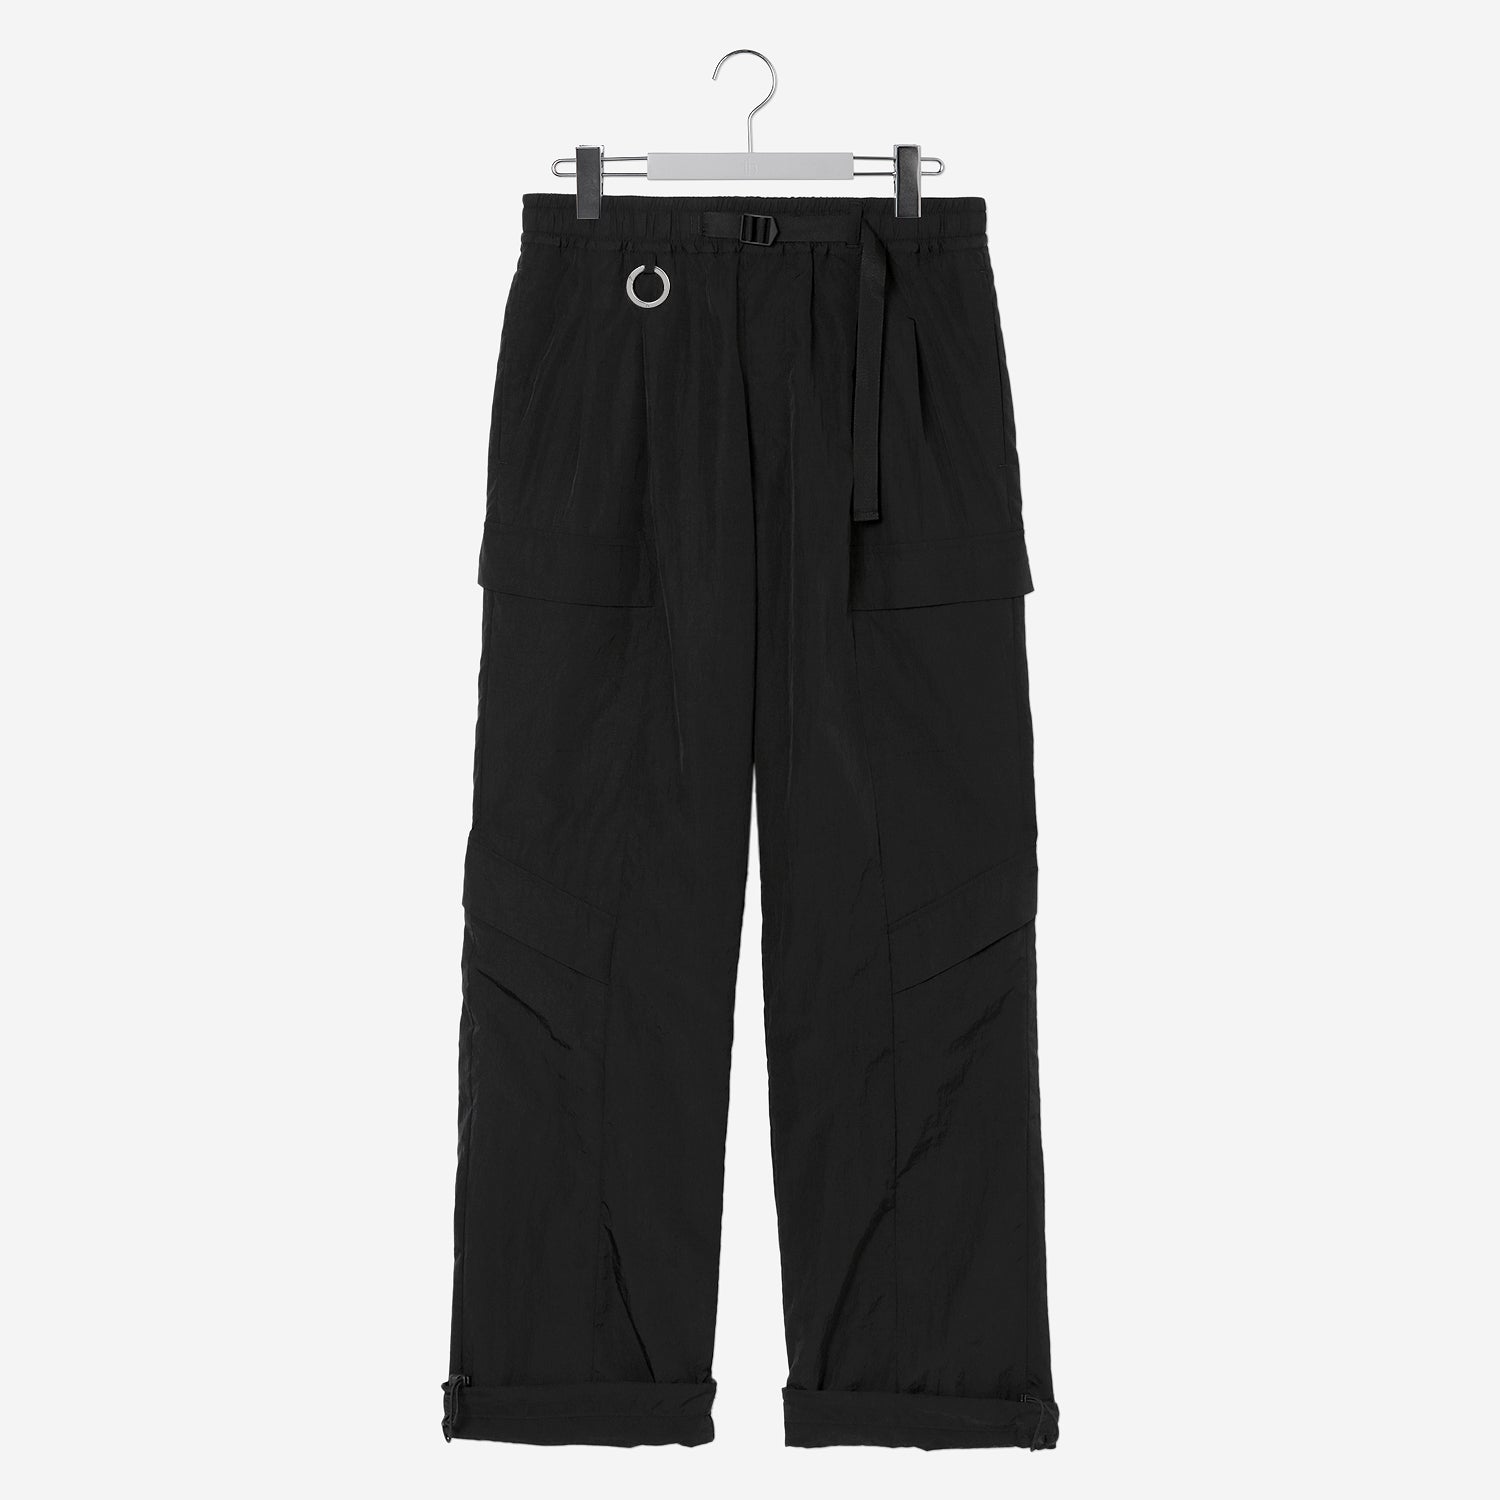 NERDRUM Type-B / Cargo Pants / black